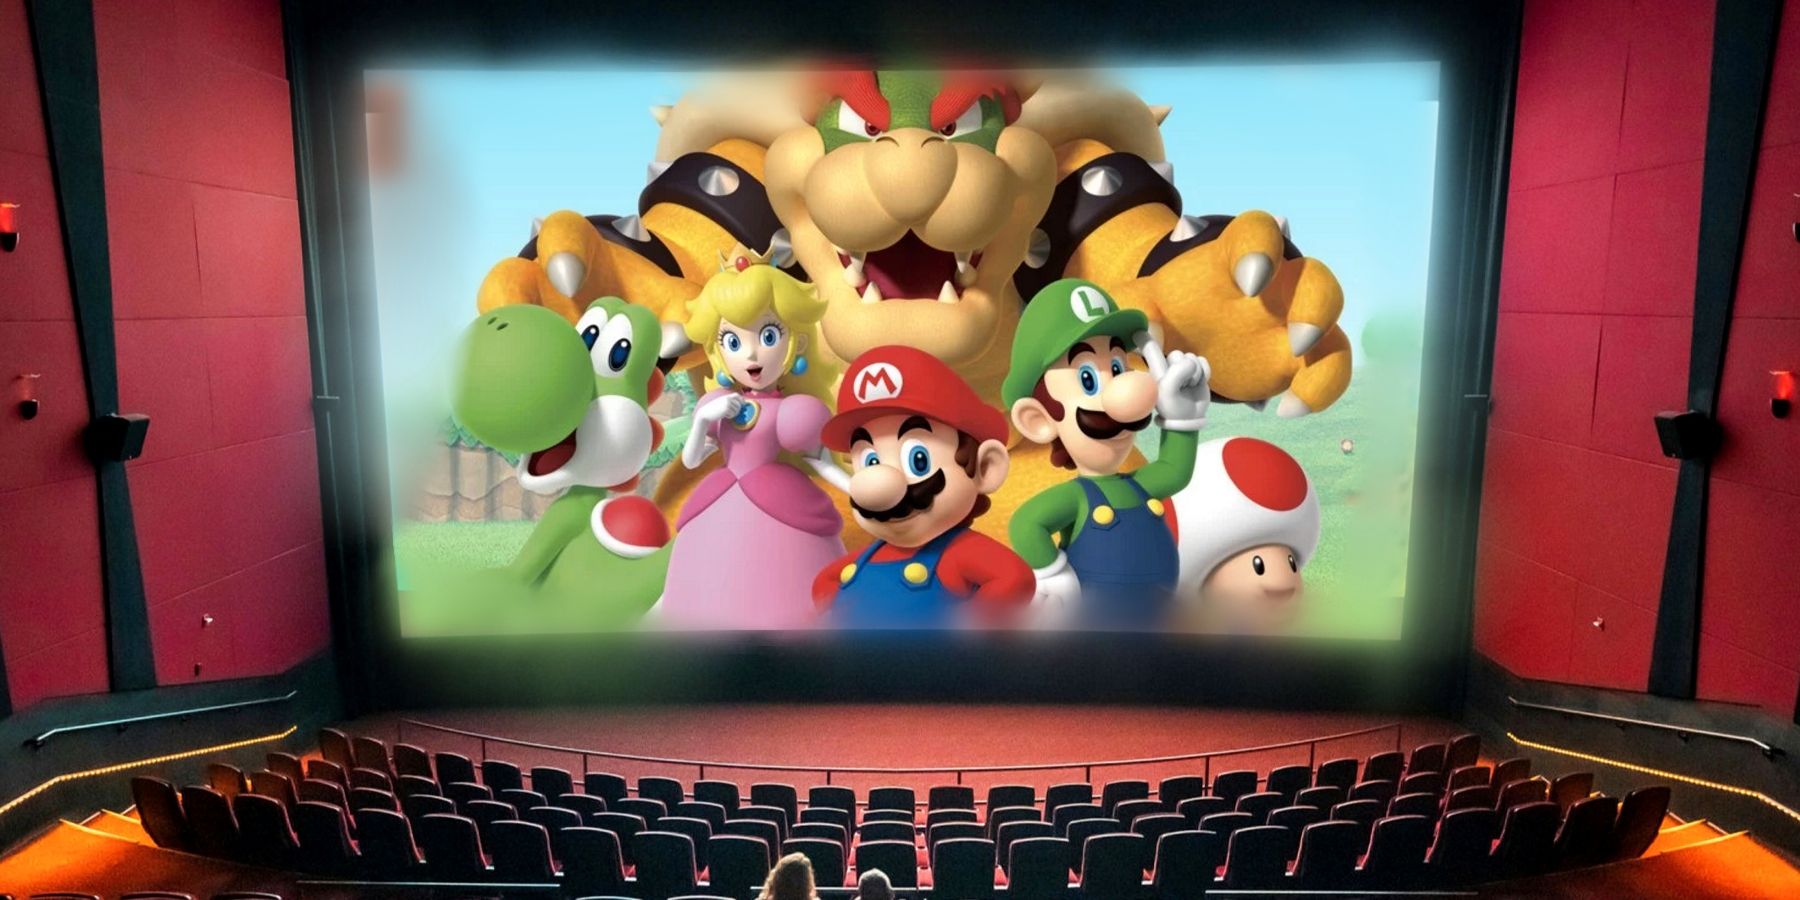 Klassiska spel som förtjänar Mario Movie Treatment